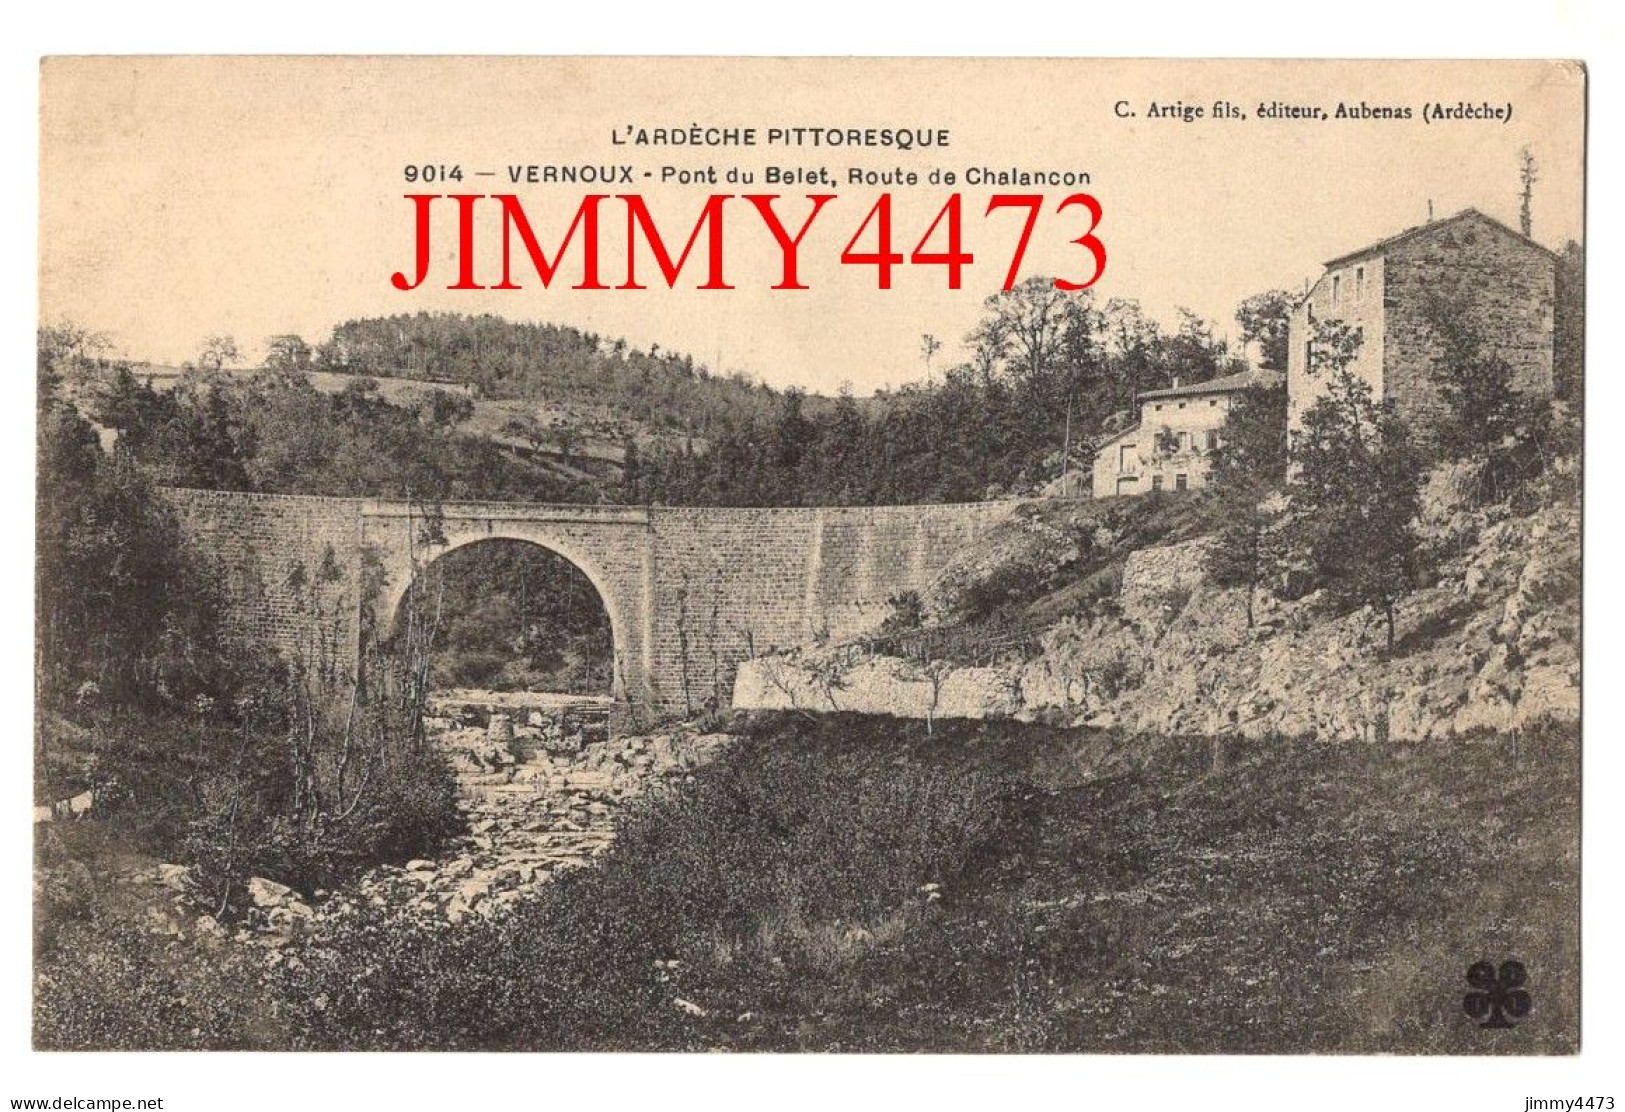 CPA - VERNOUX - Pont Du Belet, Route De Chalancon - L'Ardèche Pittoresque - N° 9014 - Edit. C. Artige Fils Aubenas - Vernoux